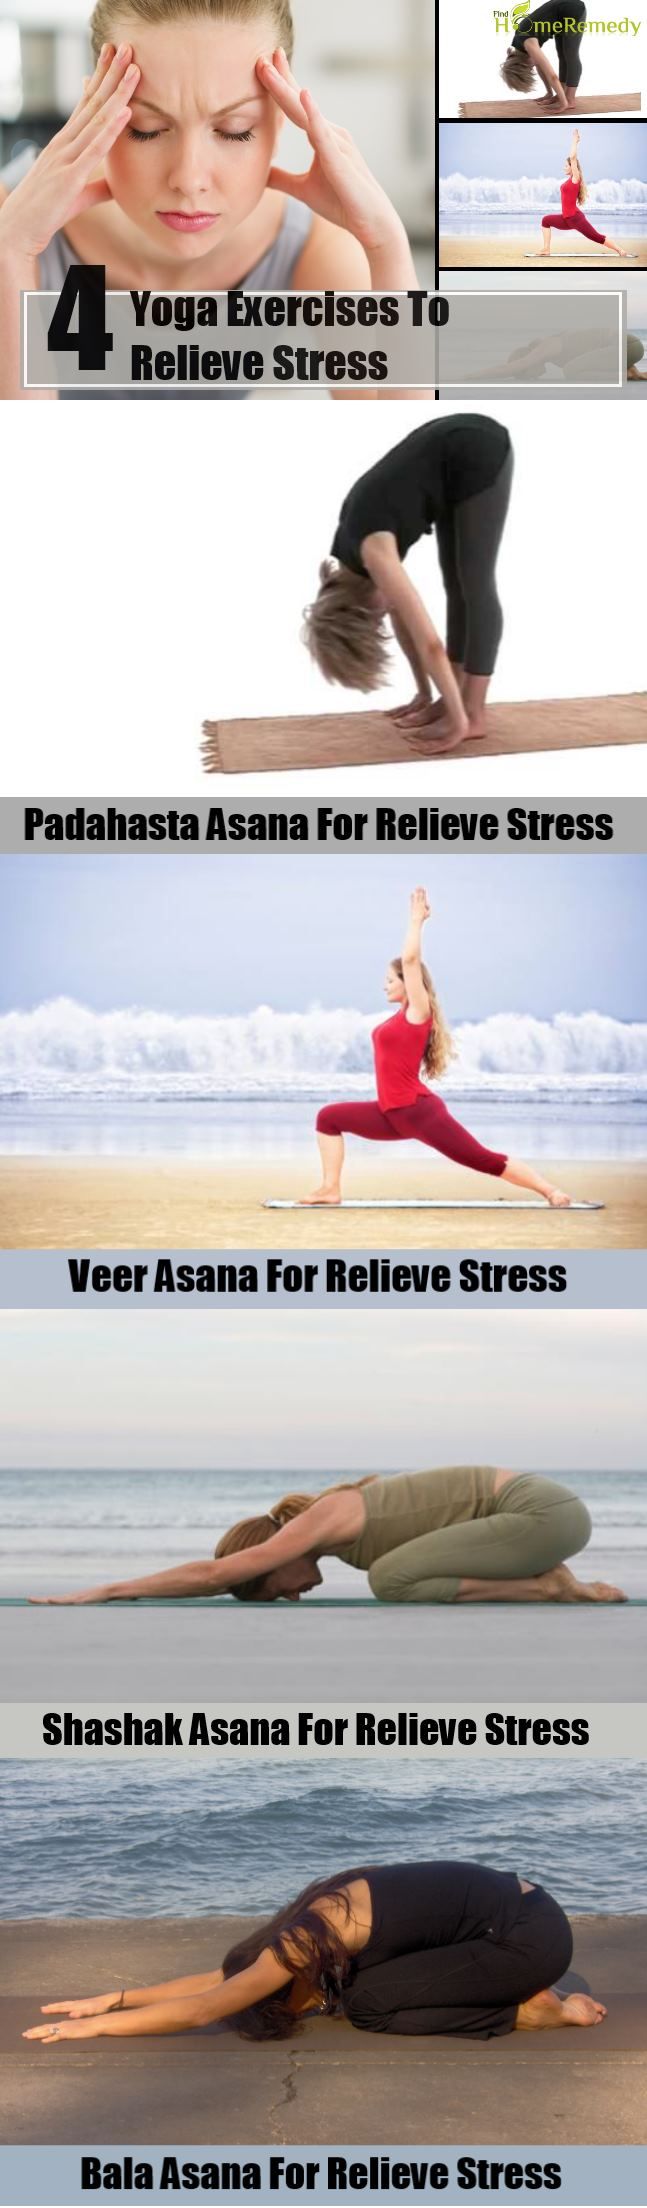 4 exercices de yoga pour soulager le stress